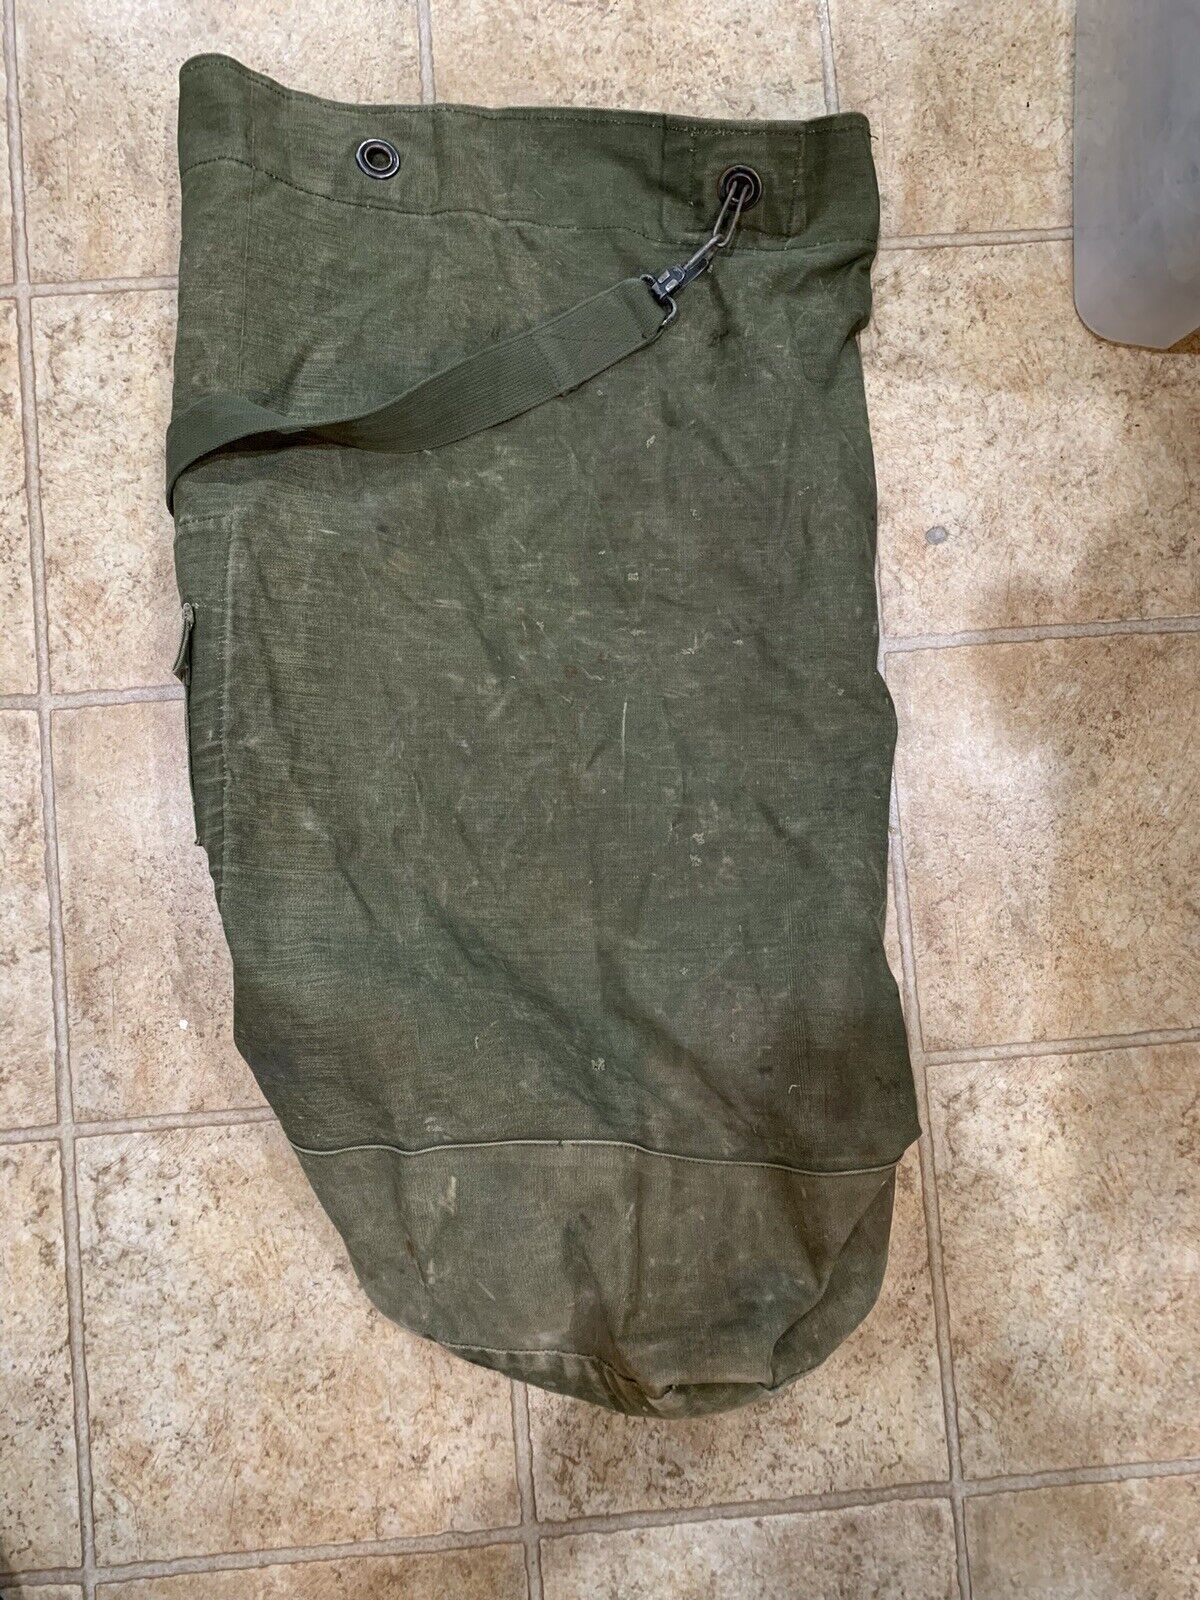 VTG Military Heavy Duty Canvas Duffle Bag Outside Pocket Single Shoulder Strap